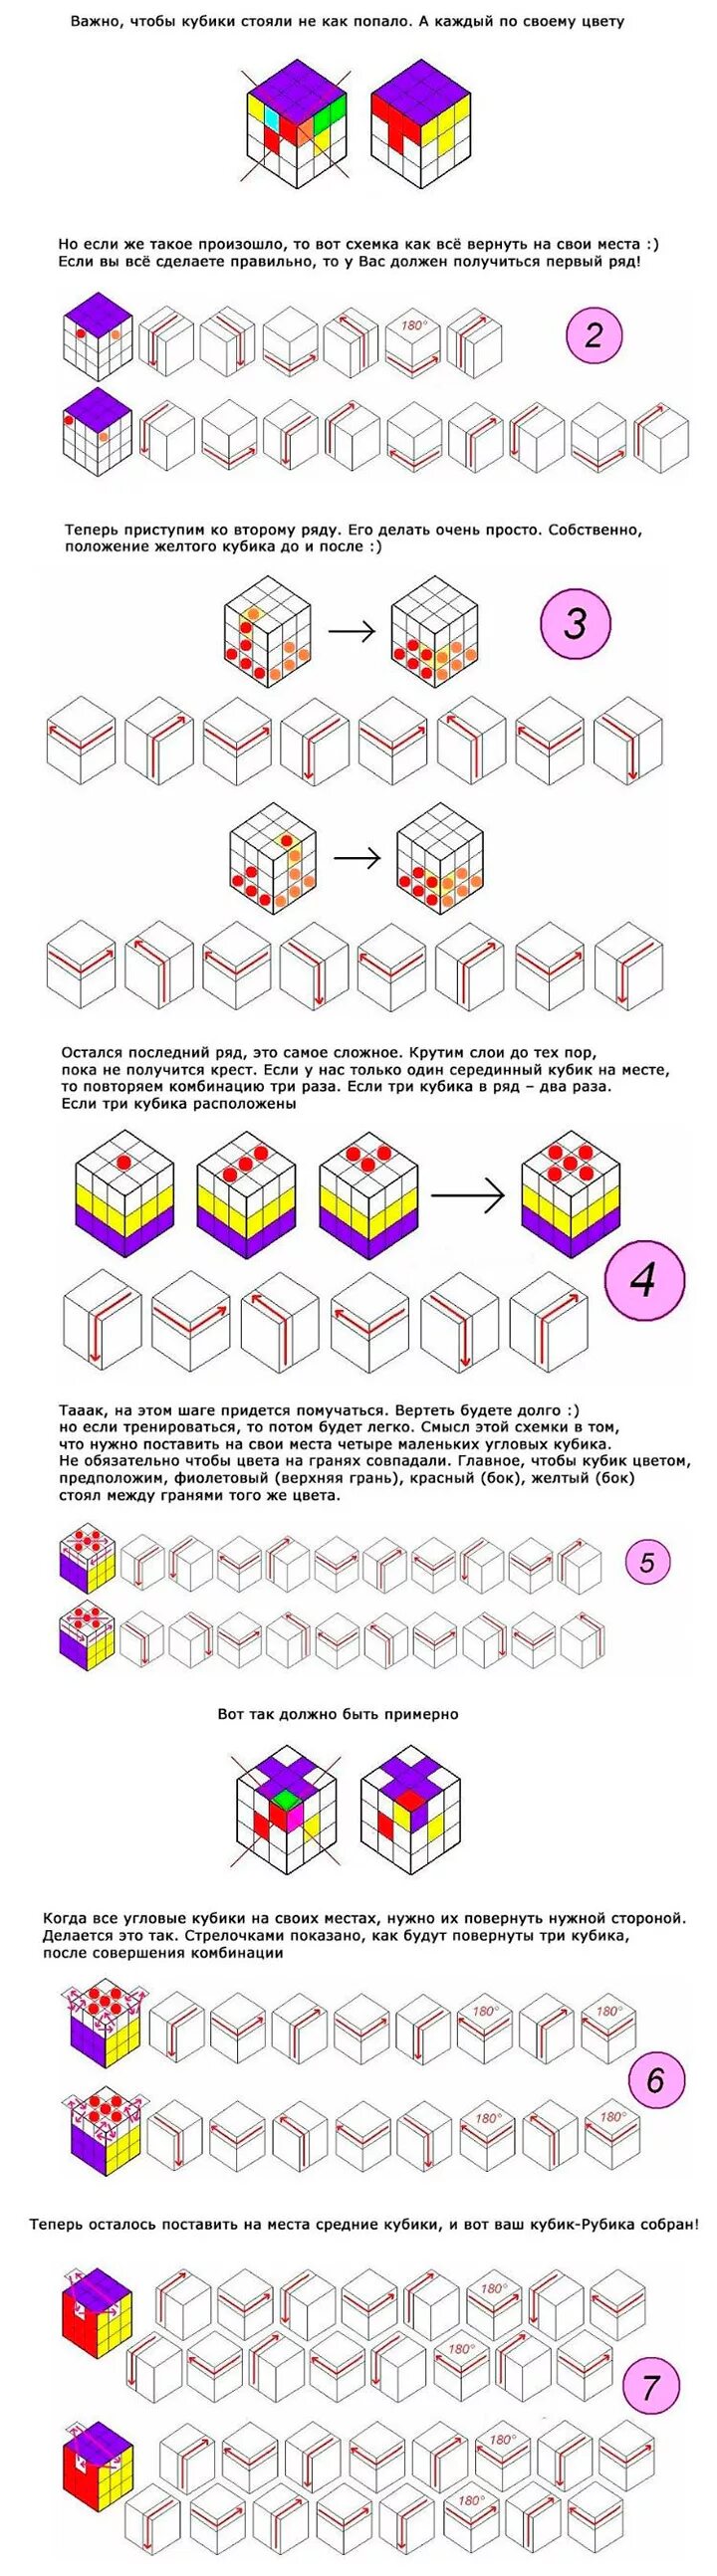 Инструкция кубика рубика 3х3. Схема сборки кубика Рубика 3х3 для начинающих в картинках. Как собрать кубик Рубика 3х3 схема. Инструкция кубик Рубика 3х3 для начинающих схема. Как собрать кубик Рубика 3х3 схема с картинками для начинающих.